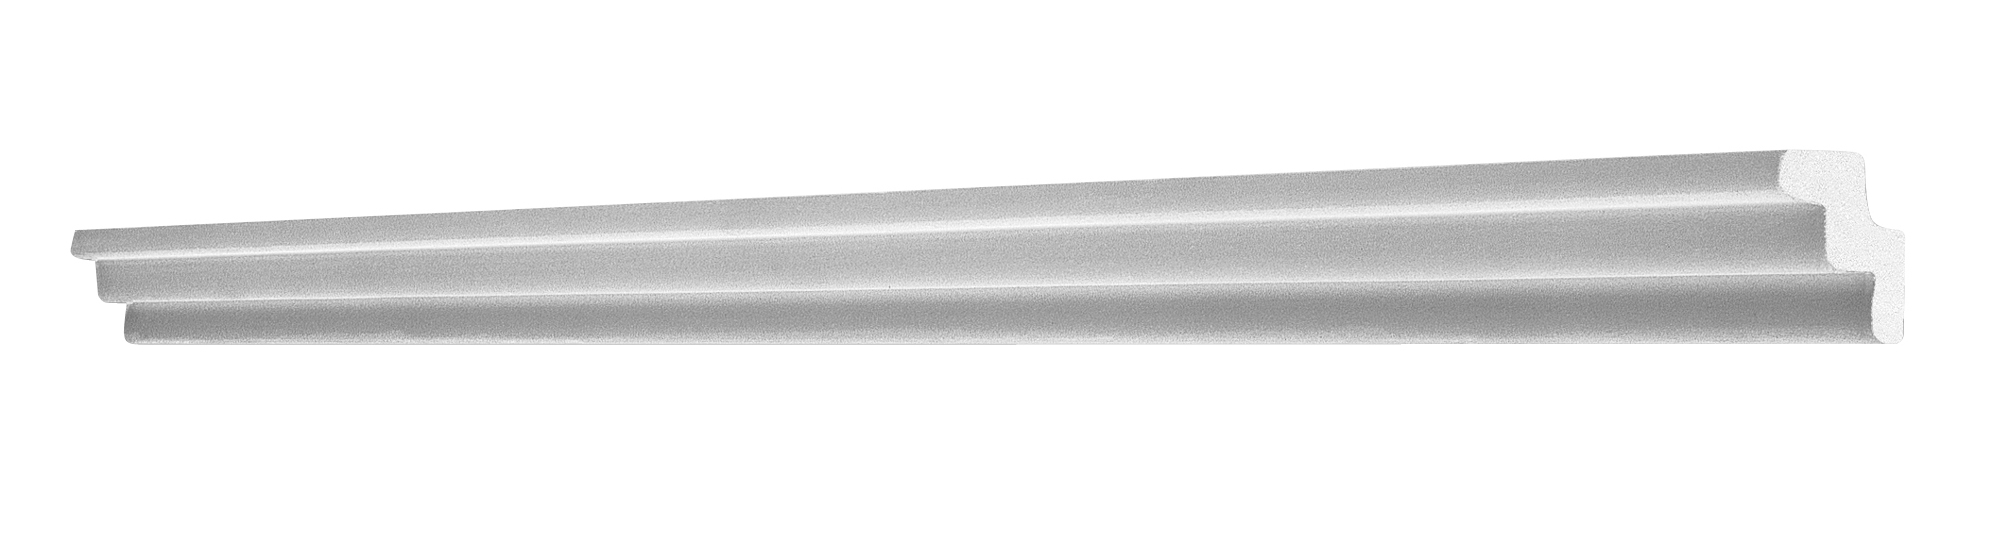 SAARPOR Zierprofil extrudiert A30 weiß 1m 